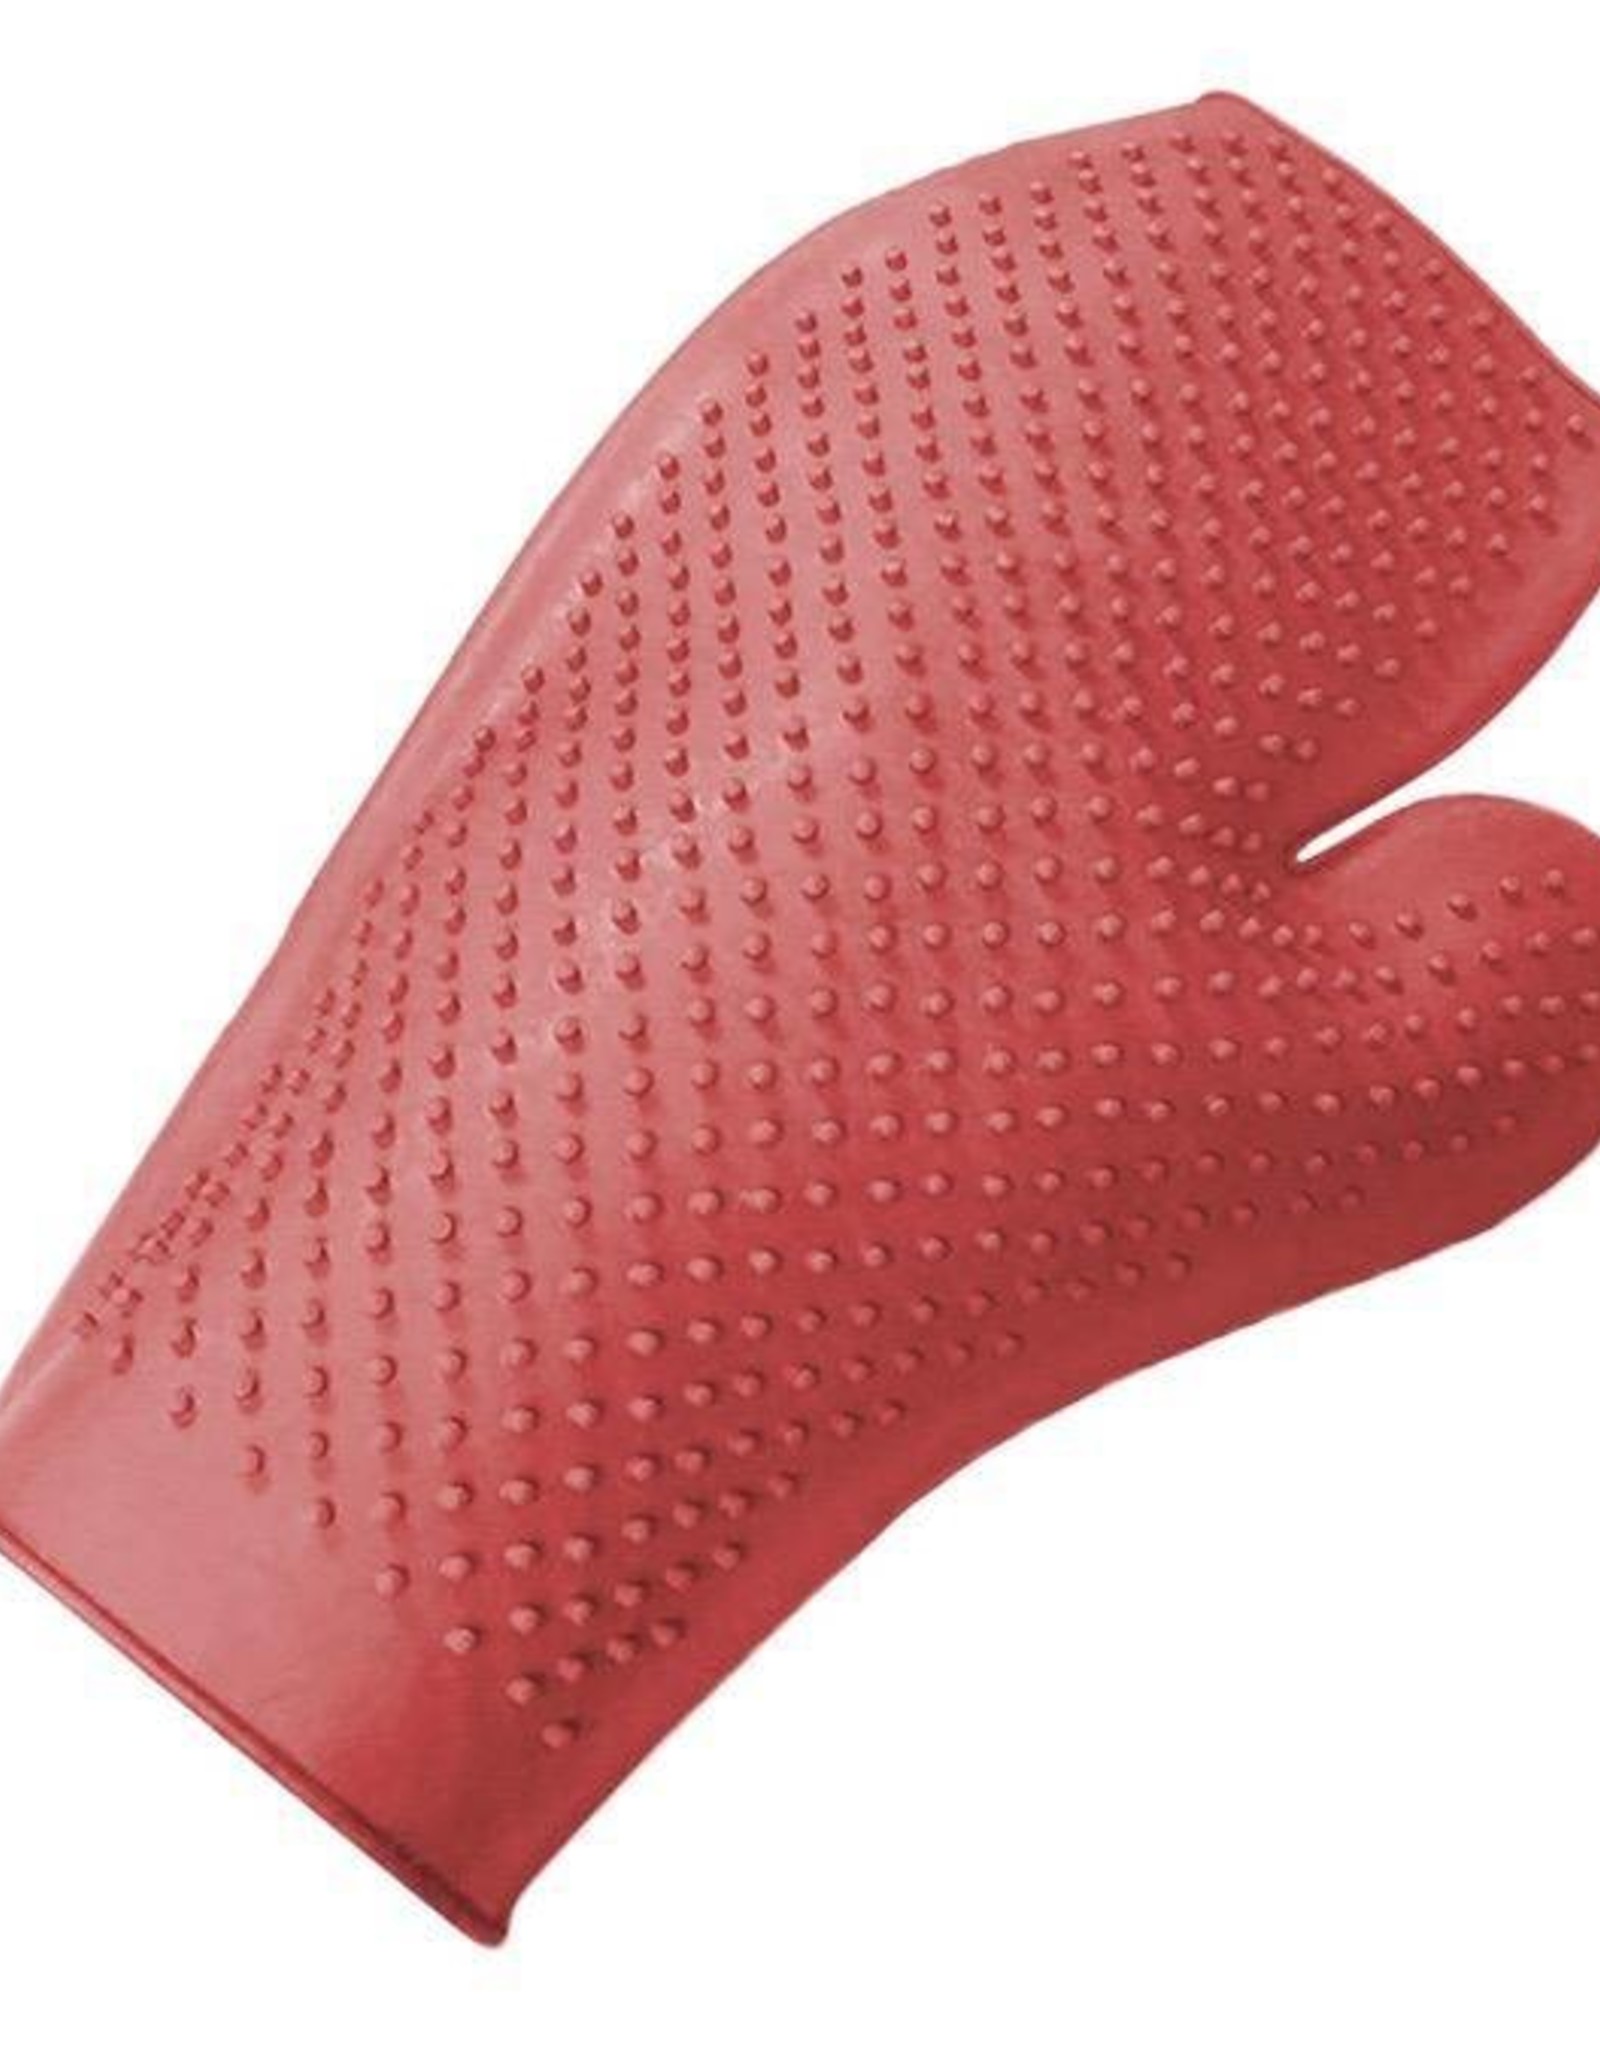 JMI Rubber Massage Glove